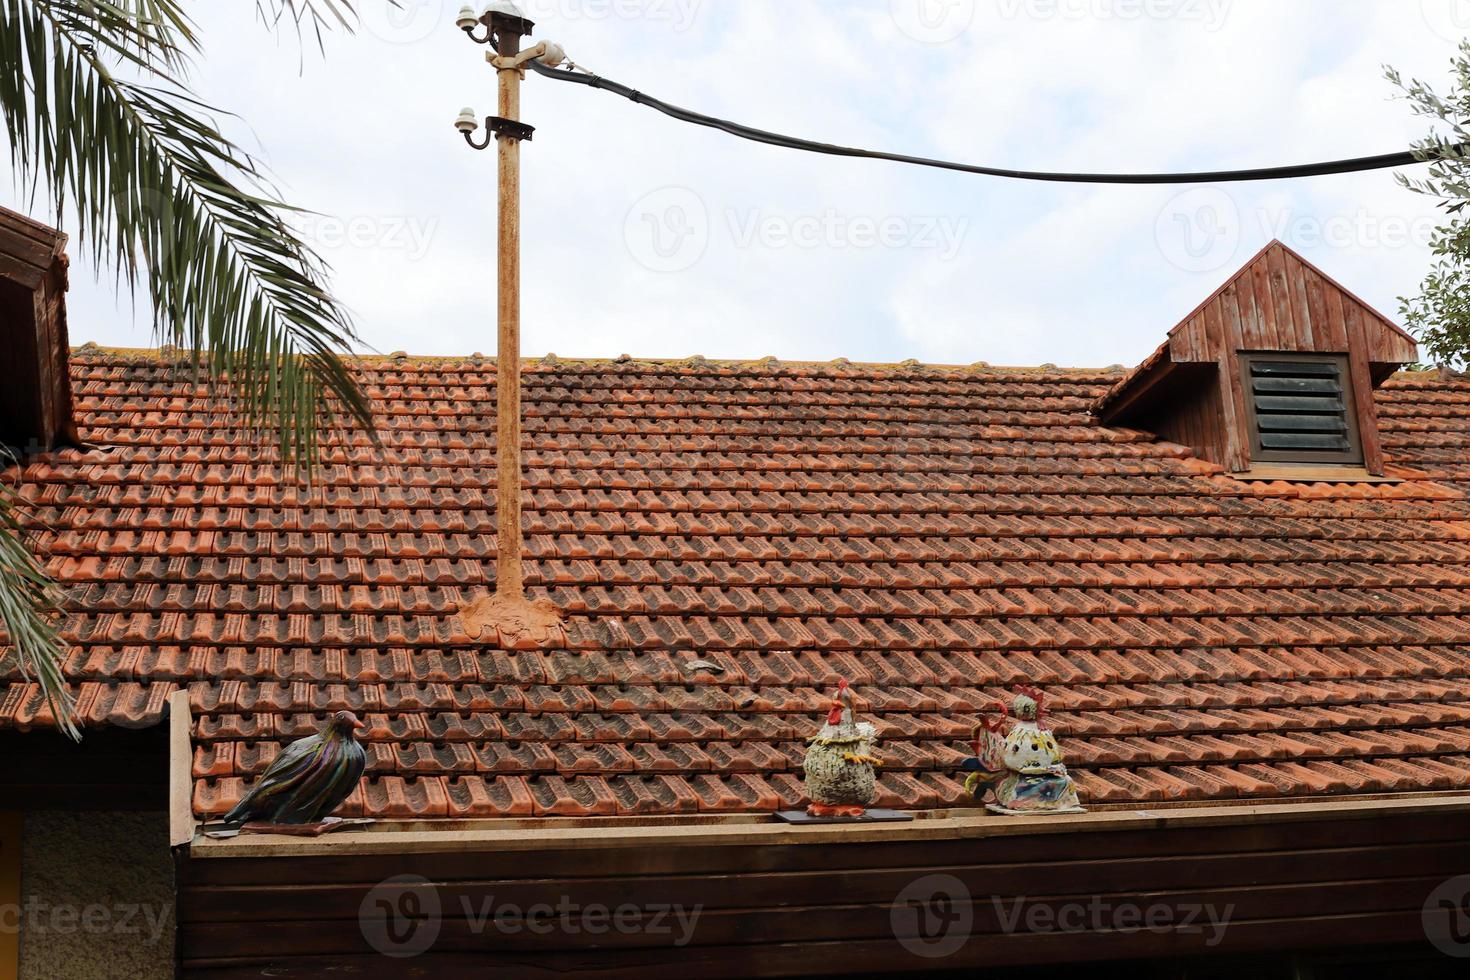 betegeld dak Aan een woon- gebouw in Israël. foto